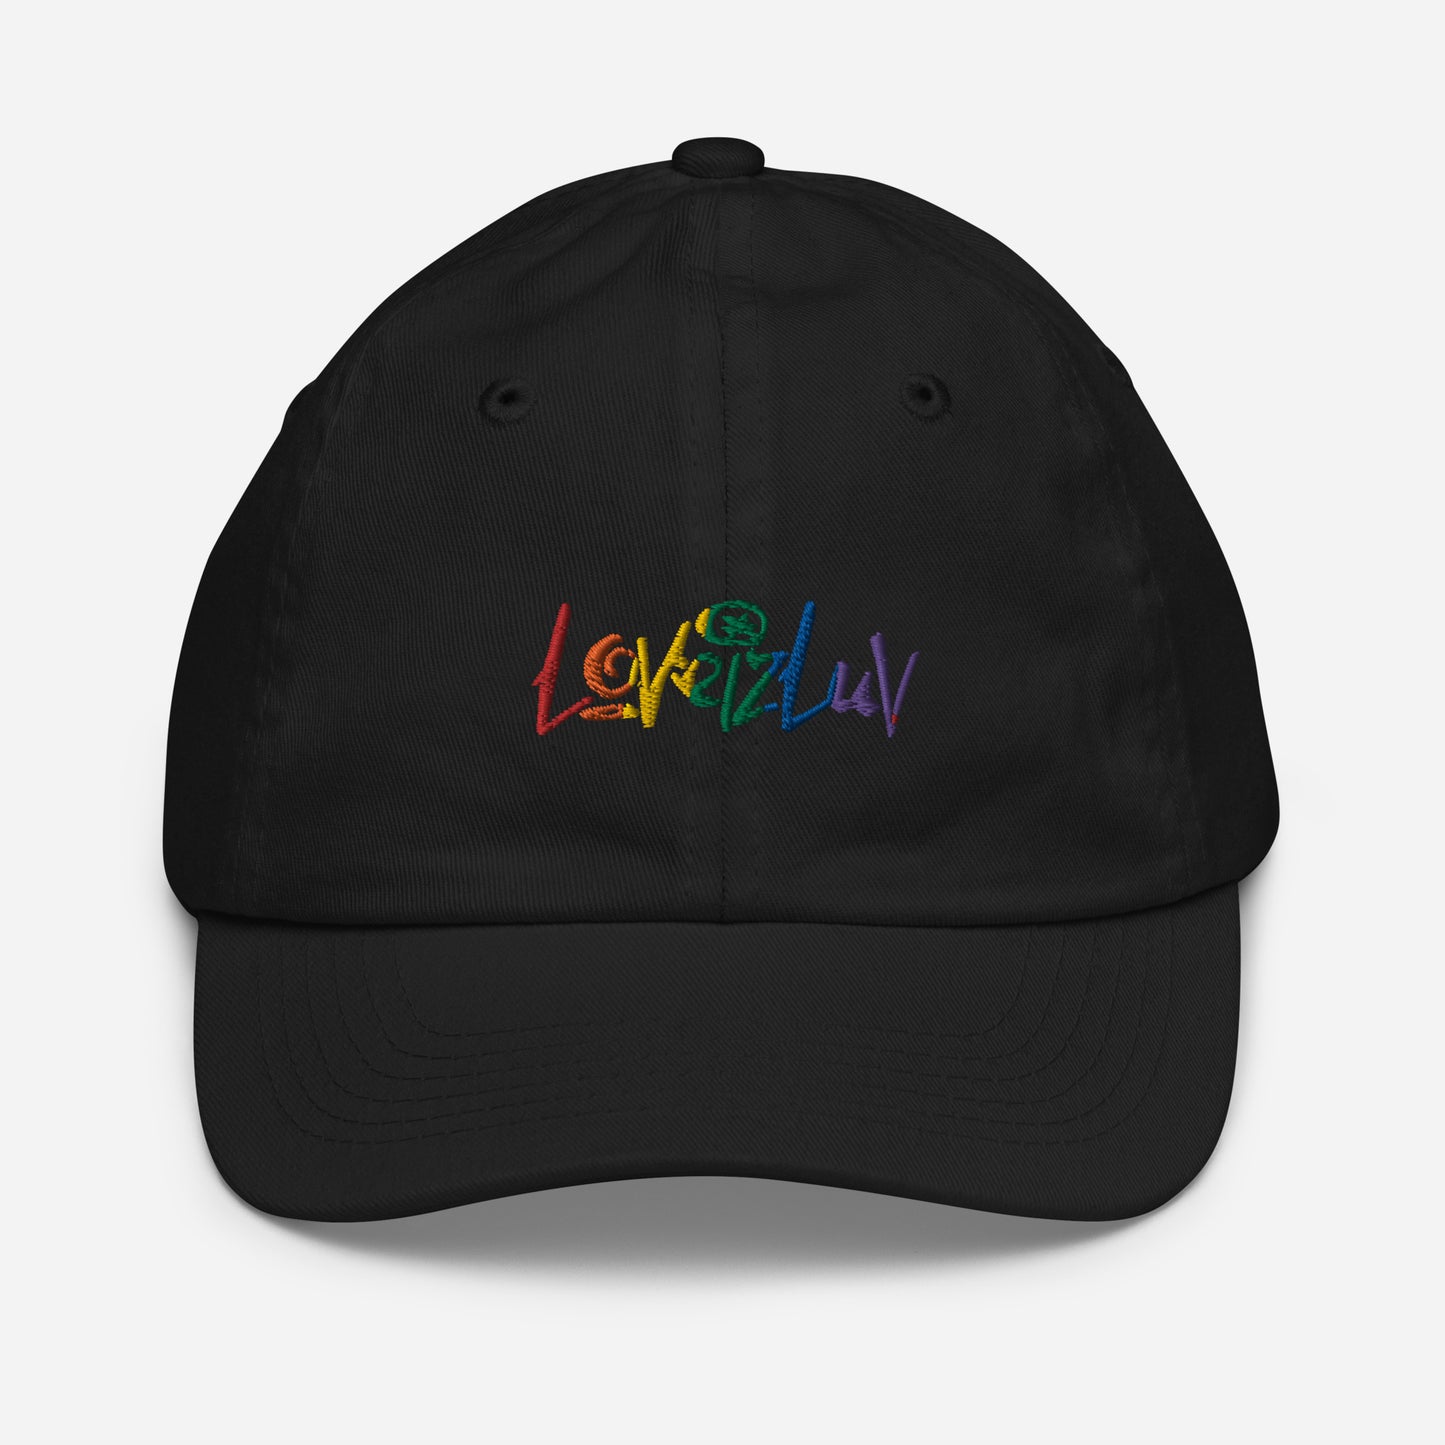 LoveizLove Embroidered Kids baseball Hat